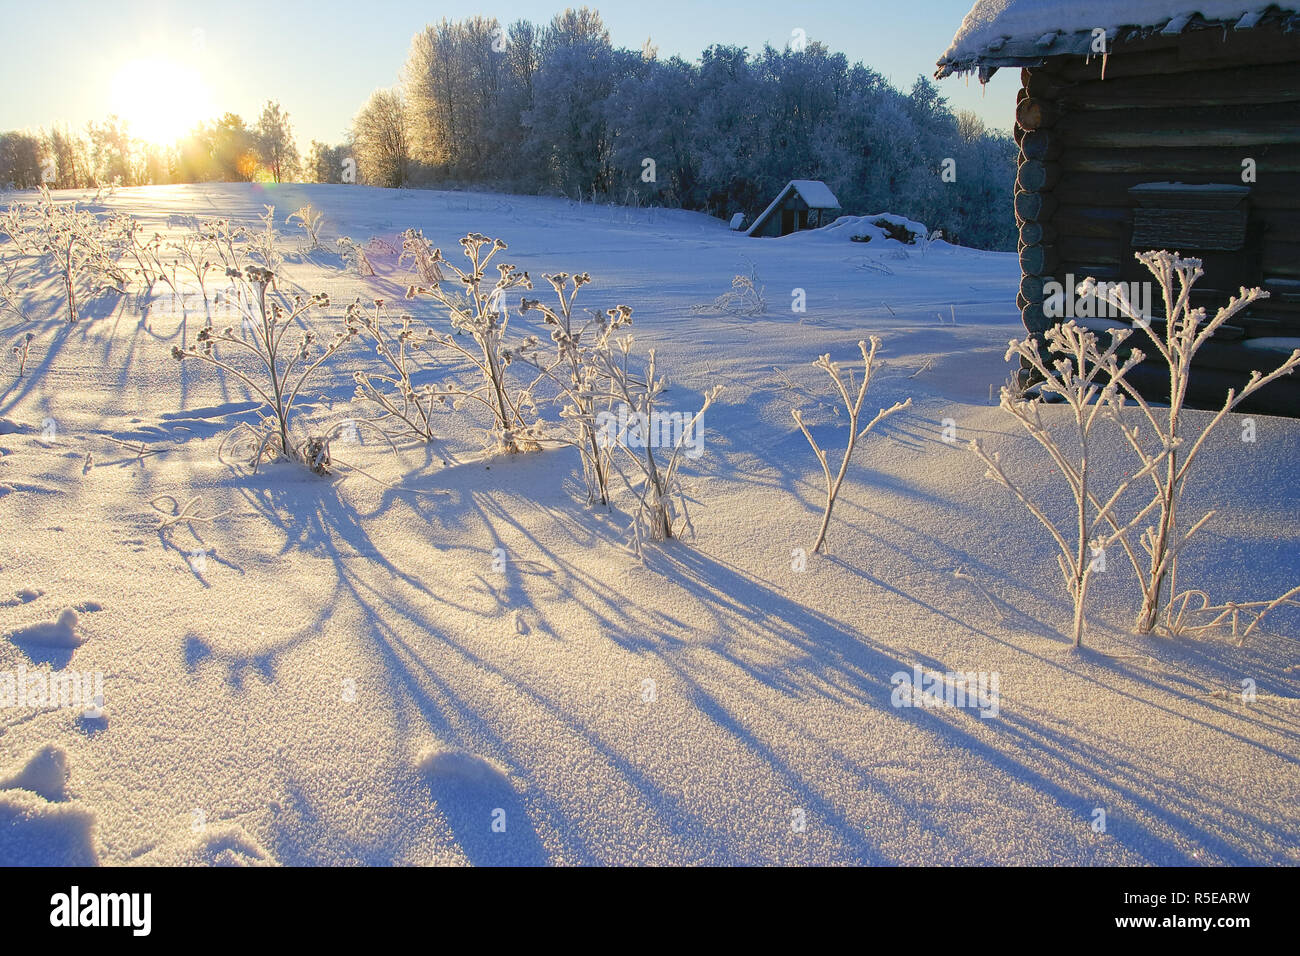 Paesaggio invernale con vecchie case in legno ed erba nella neve profonda e brina nella luce calda del sole con lunghe ombre e lens flare. Foto Stock